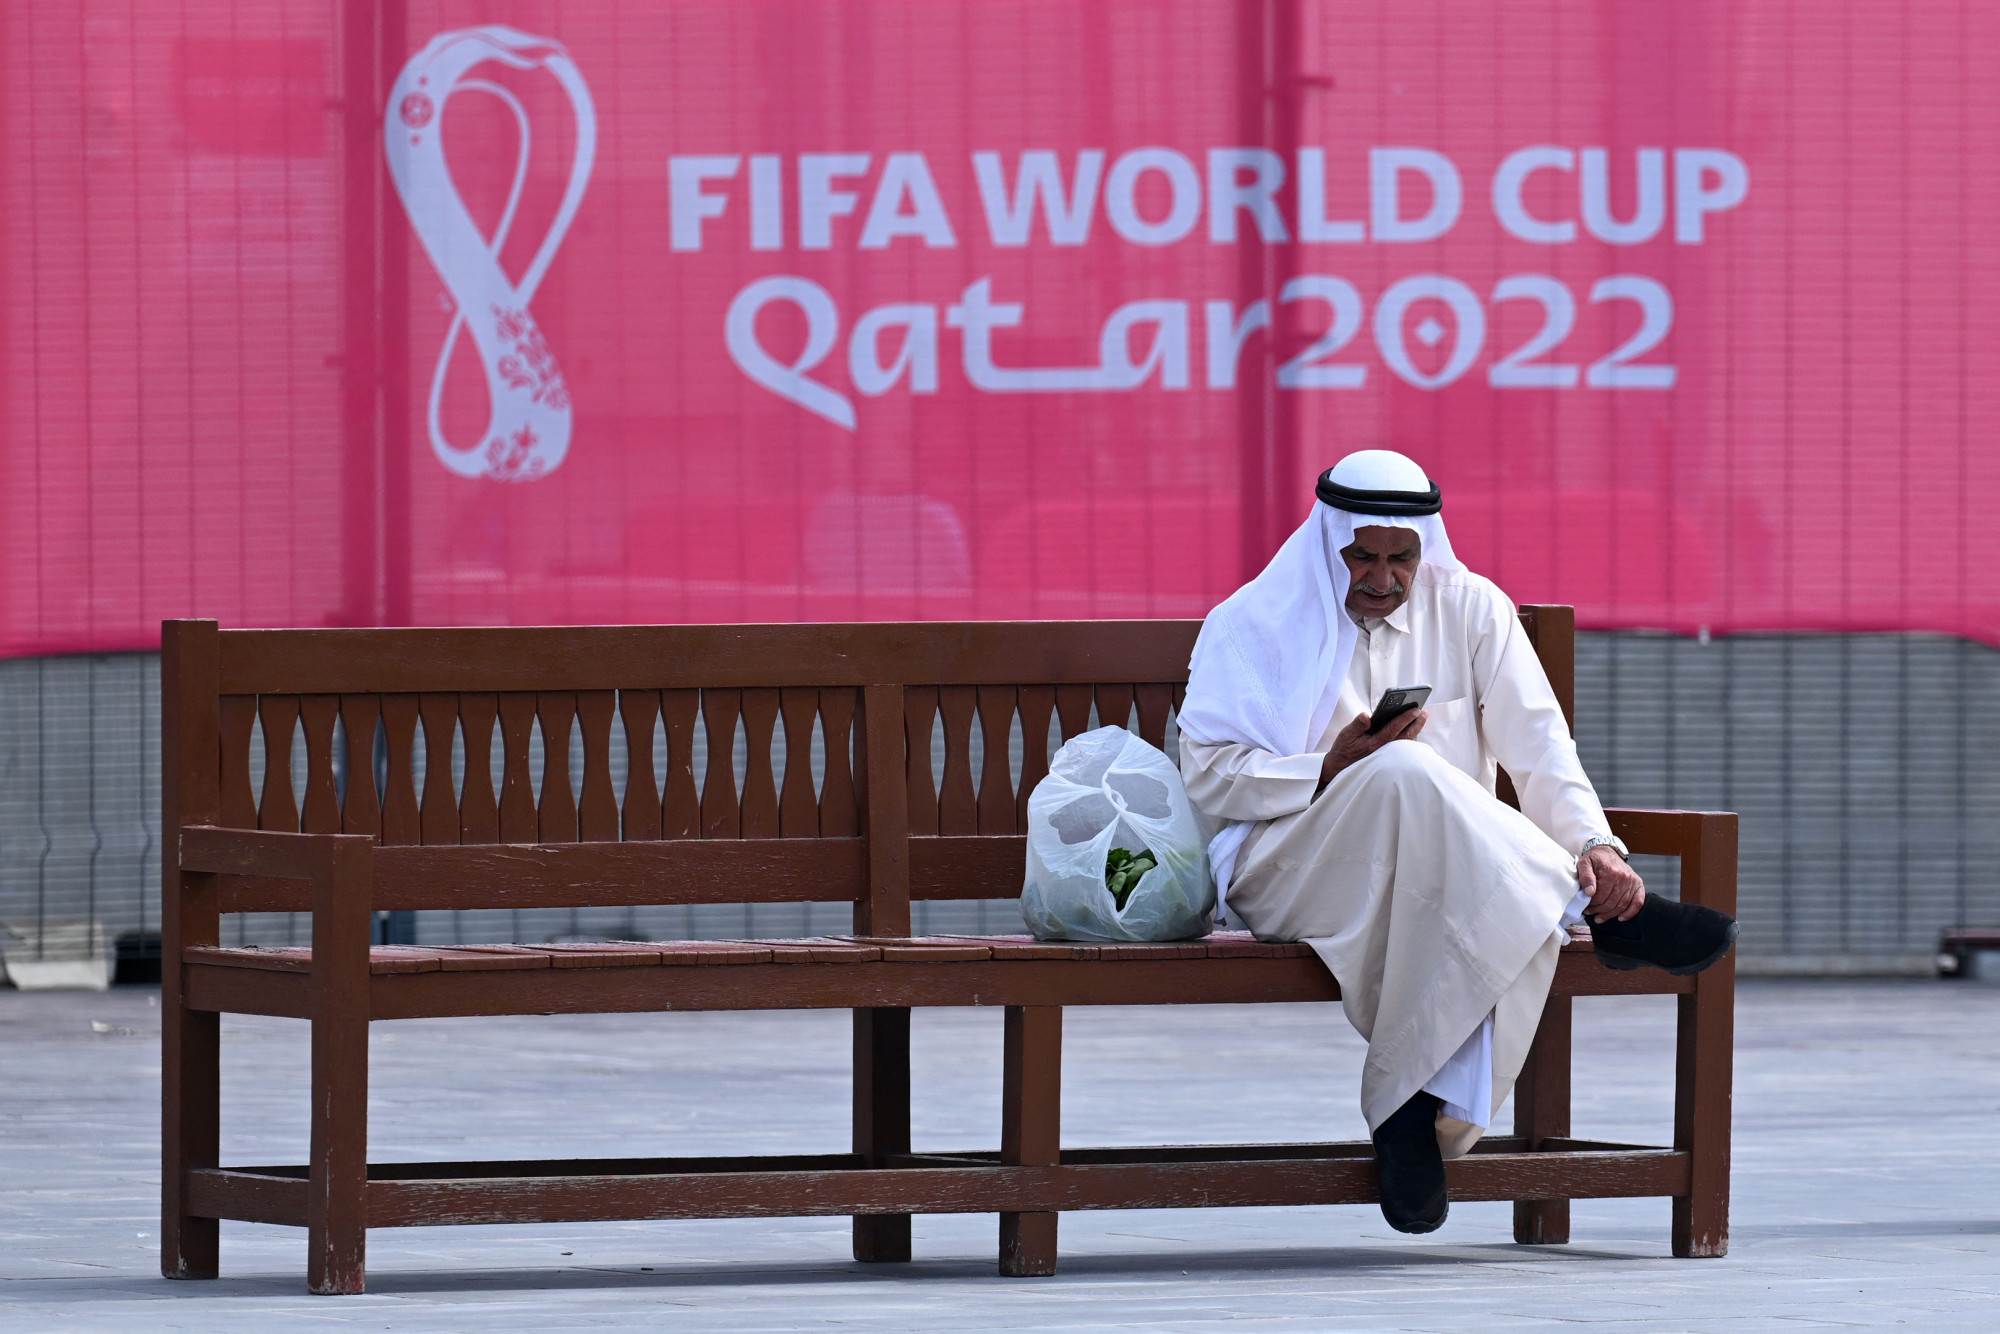 A NAIH kisebb késéssel, de figyelmeztetett, hogy veszélyes a katari világbajnokság hivatalos applikációja